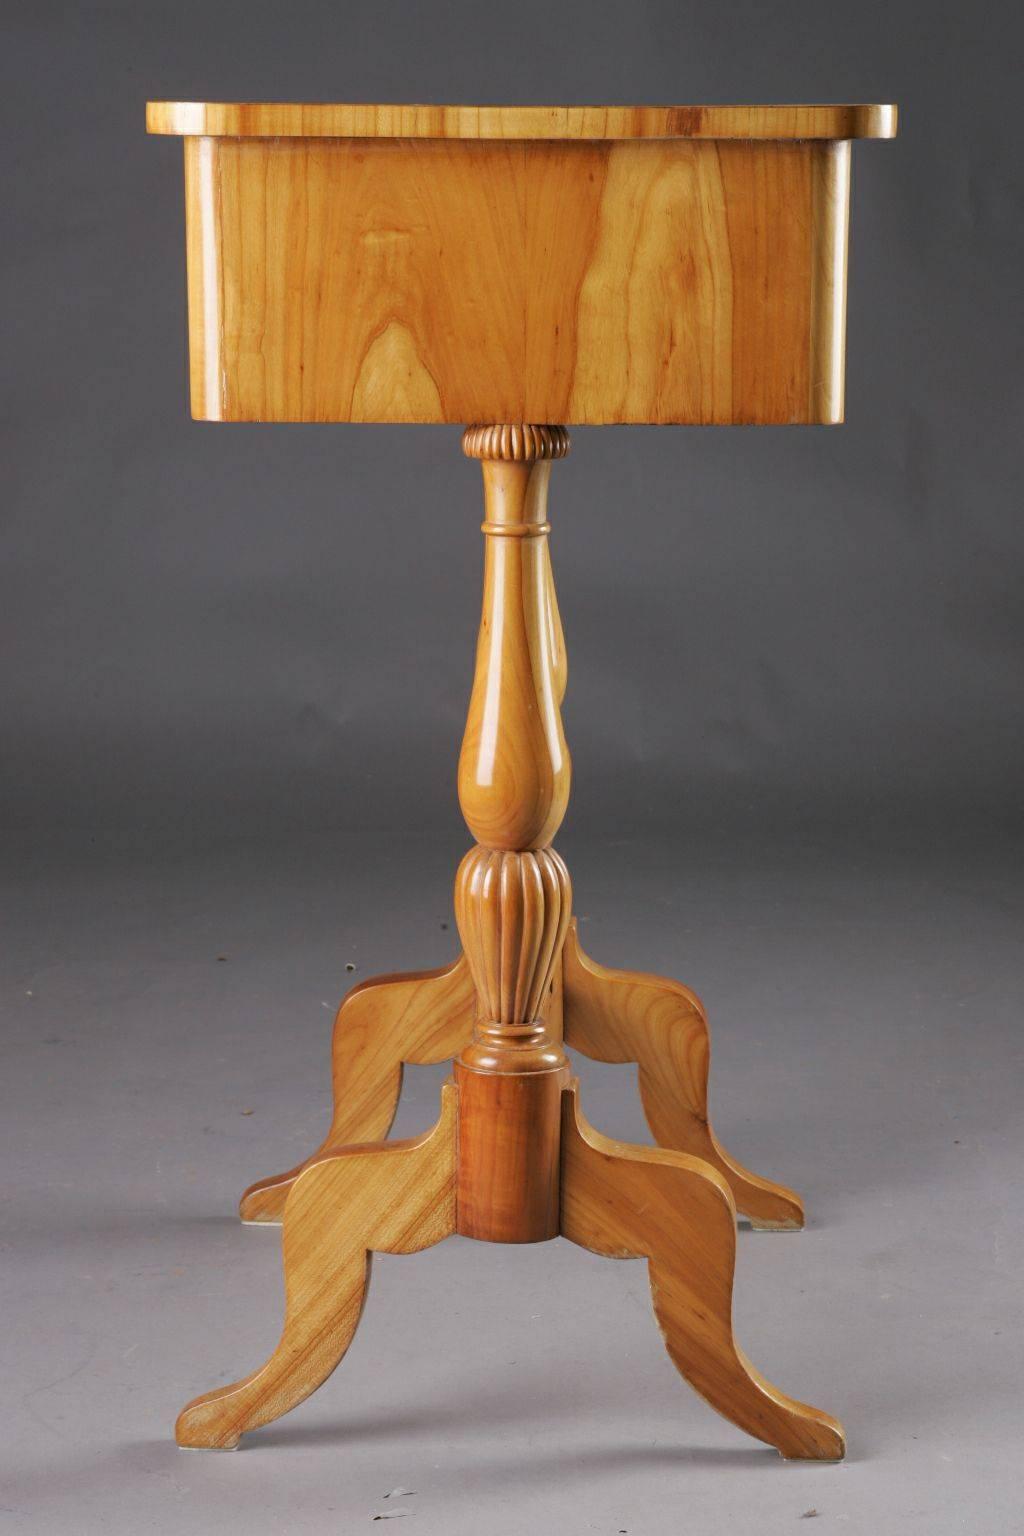 Wood 19th Century South German/West German Biedermeier Sewing Table For Sale